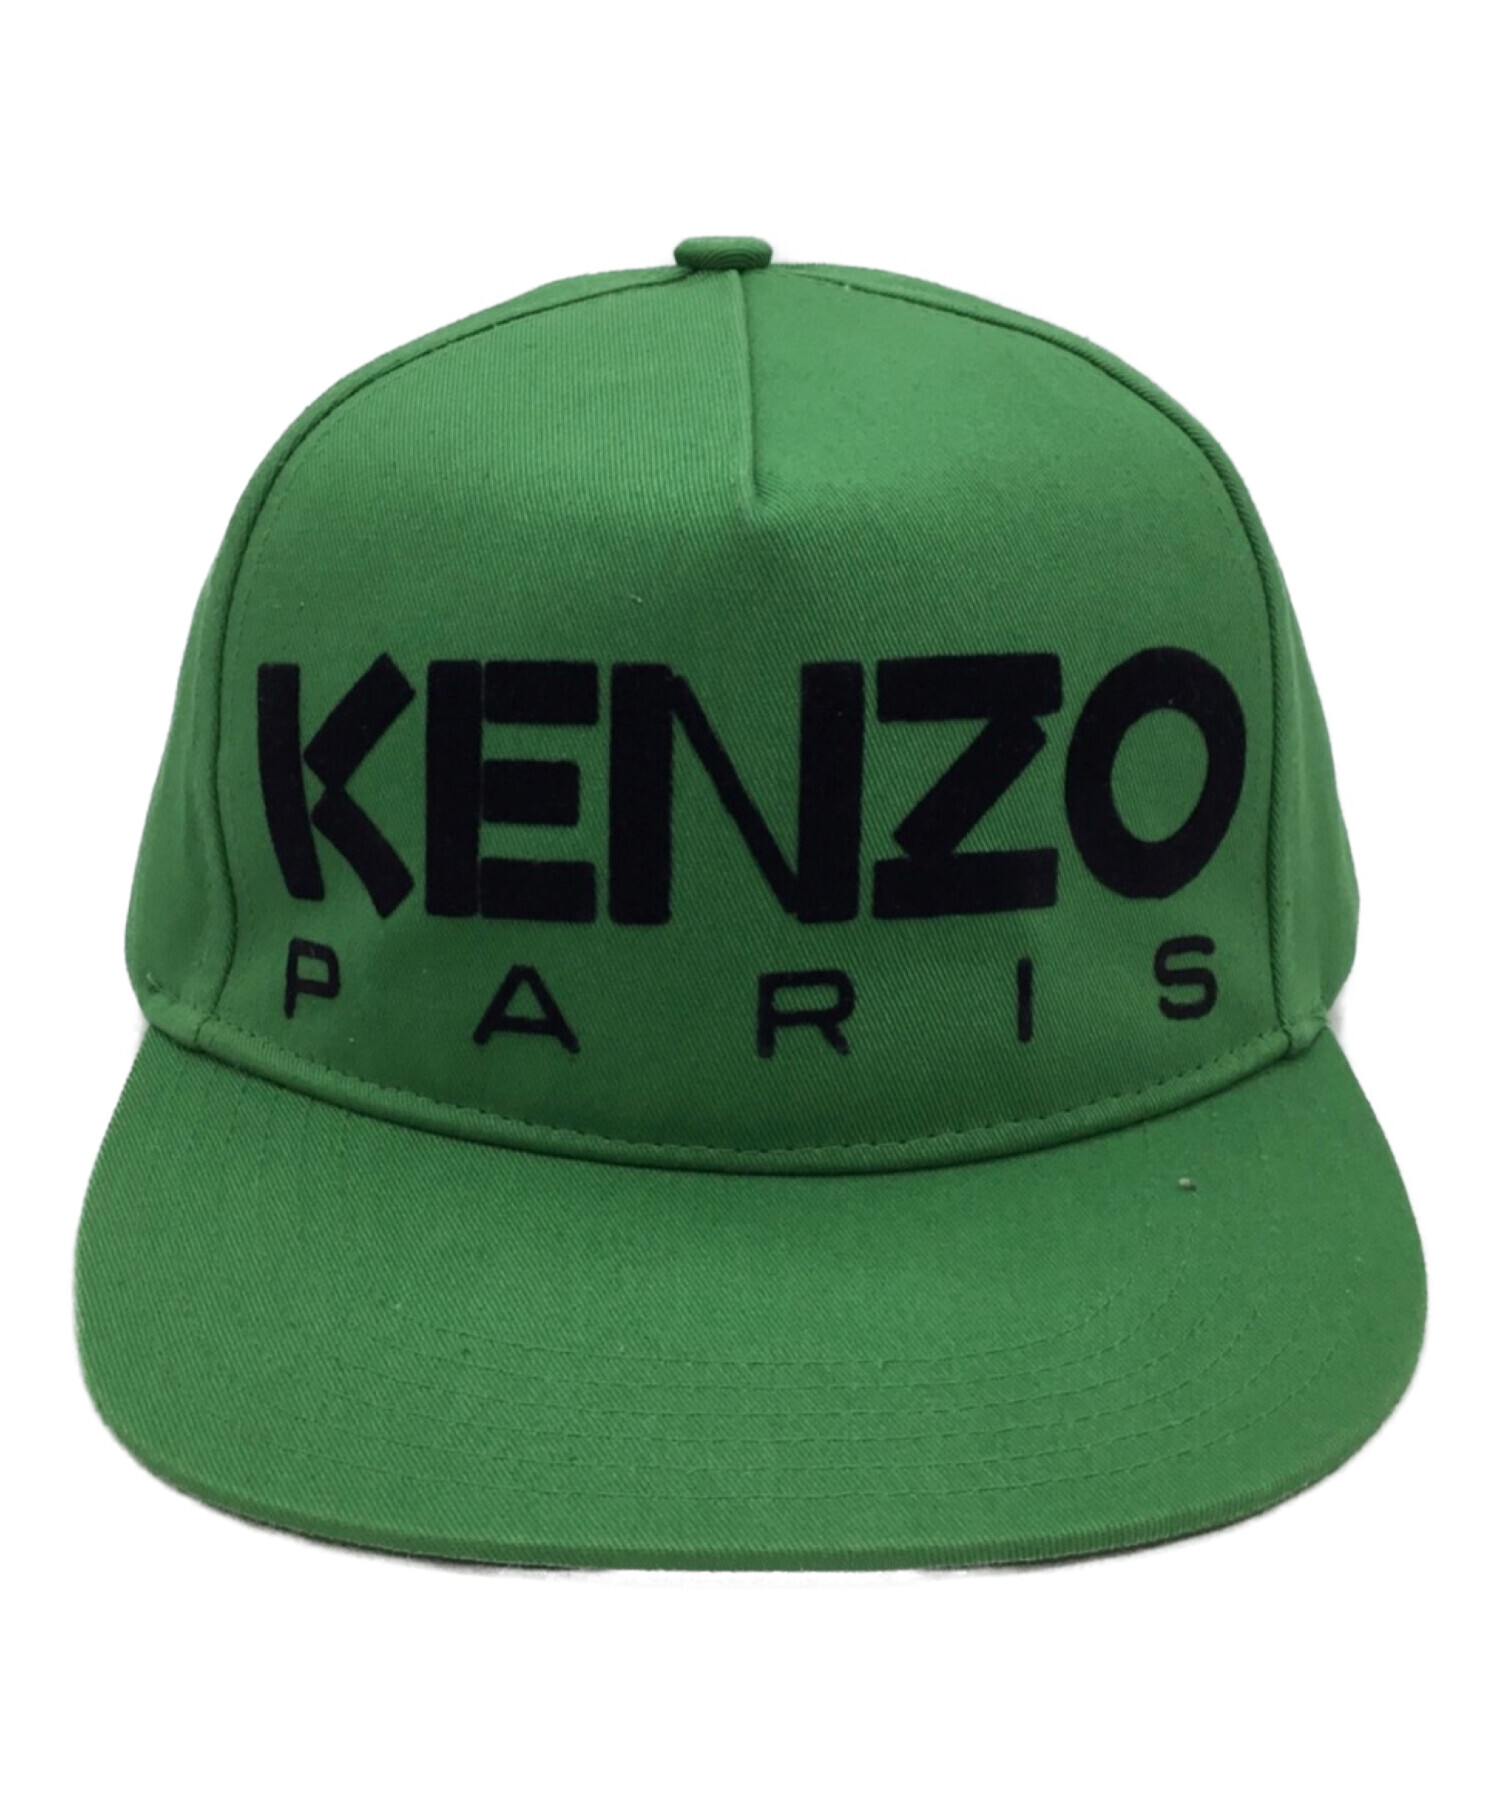 KENZO キャップ - 帽子